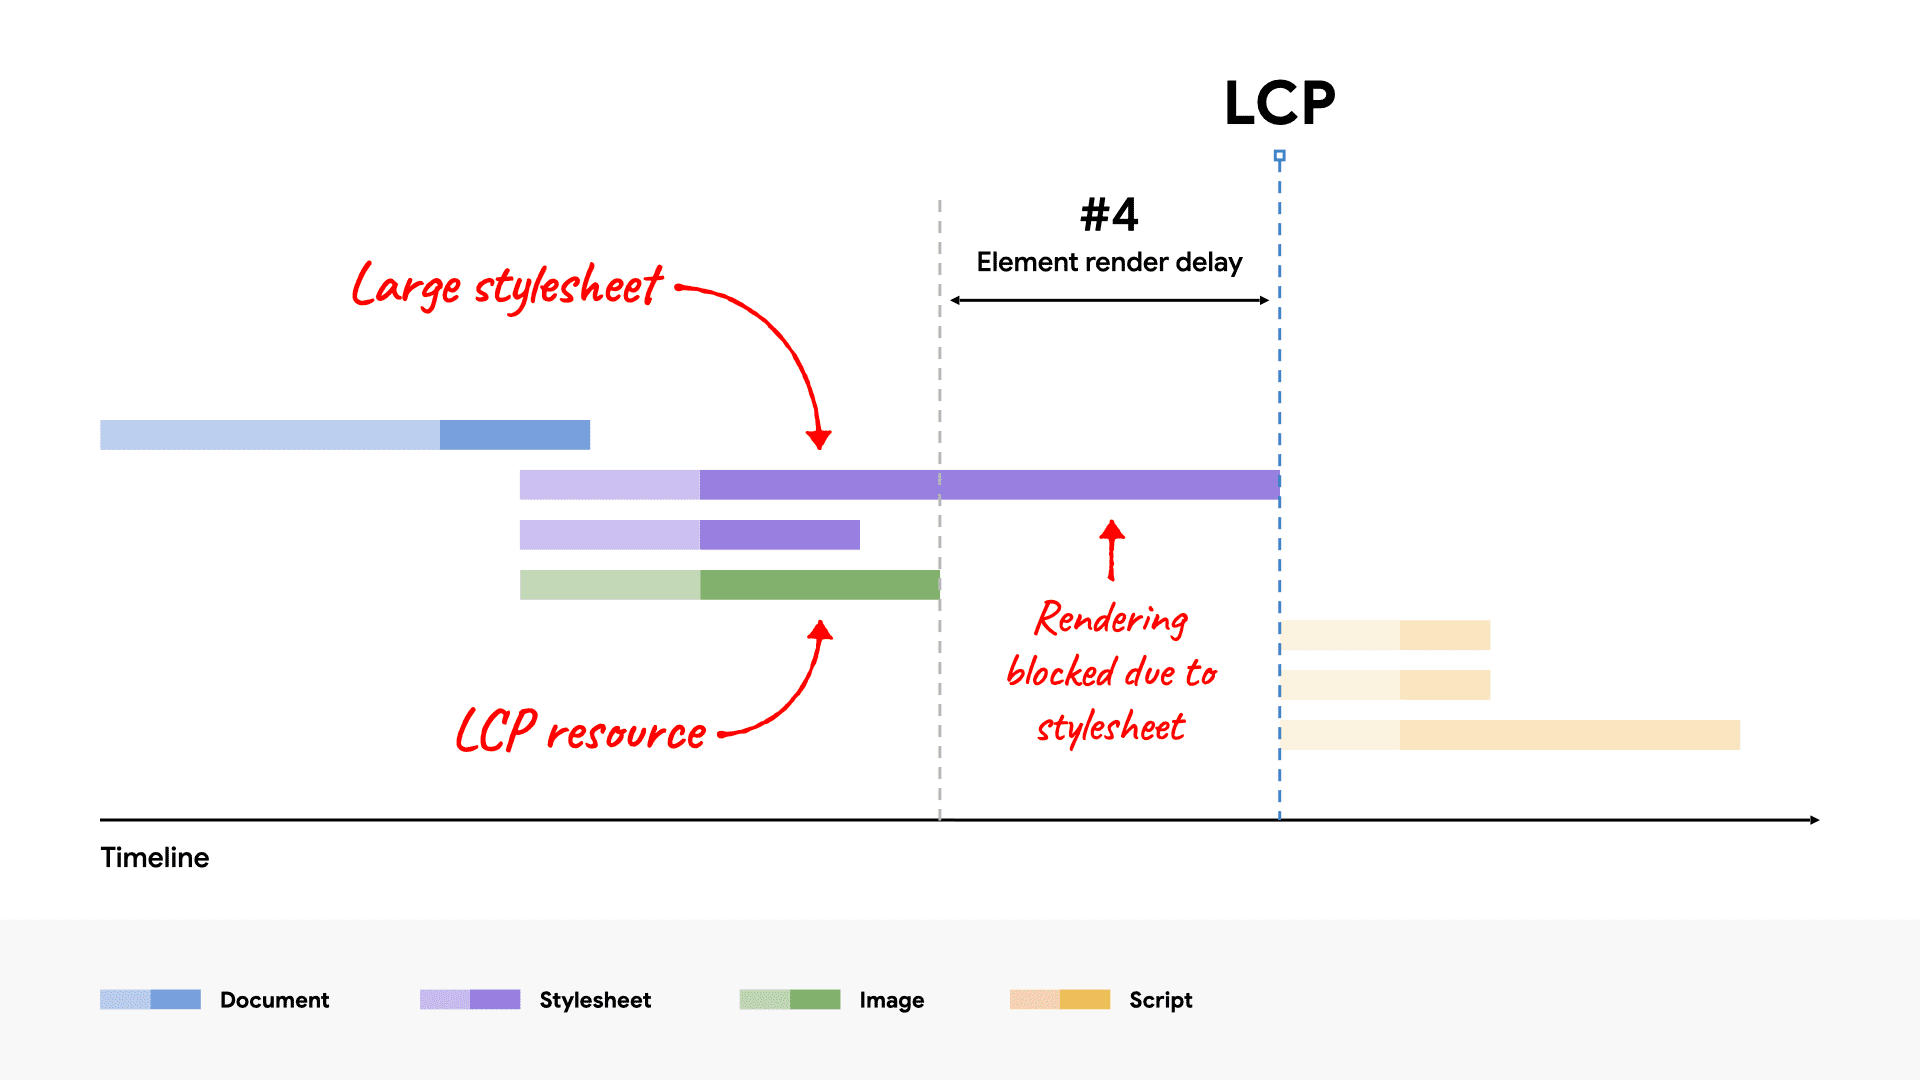 Ein Netzwerk-Wasserfalldiagramm mit einer großen CSS-Datei, die das Rendern des LCP-Elements blockiert, da das Laden länger dauert als die LCP-Ressource